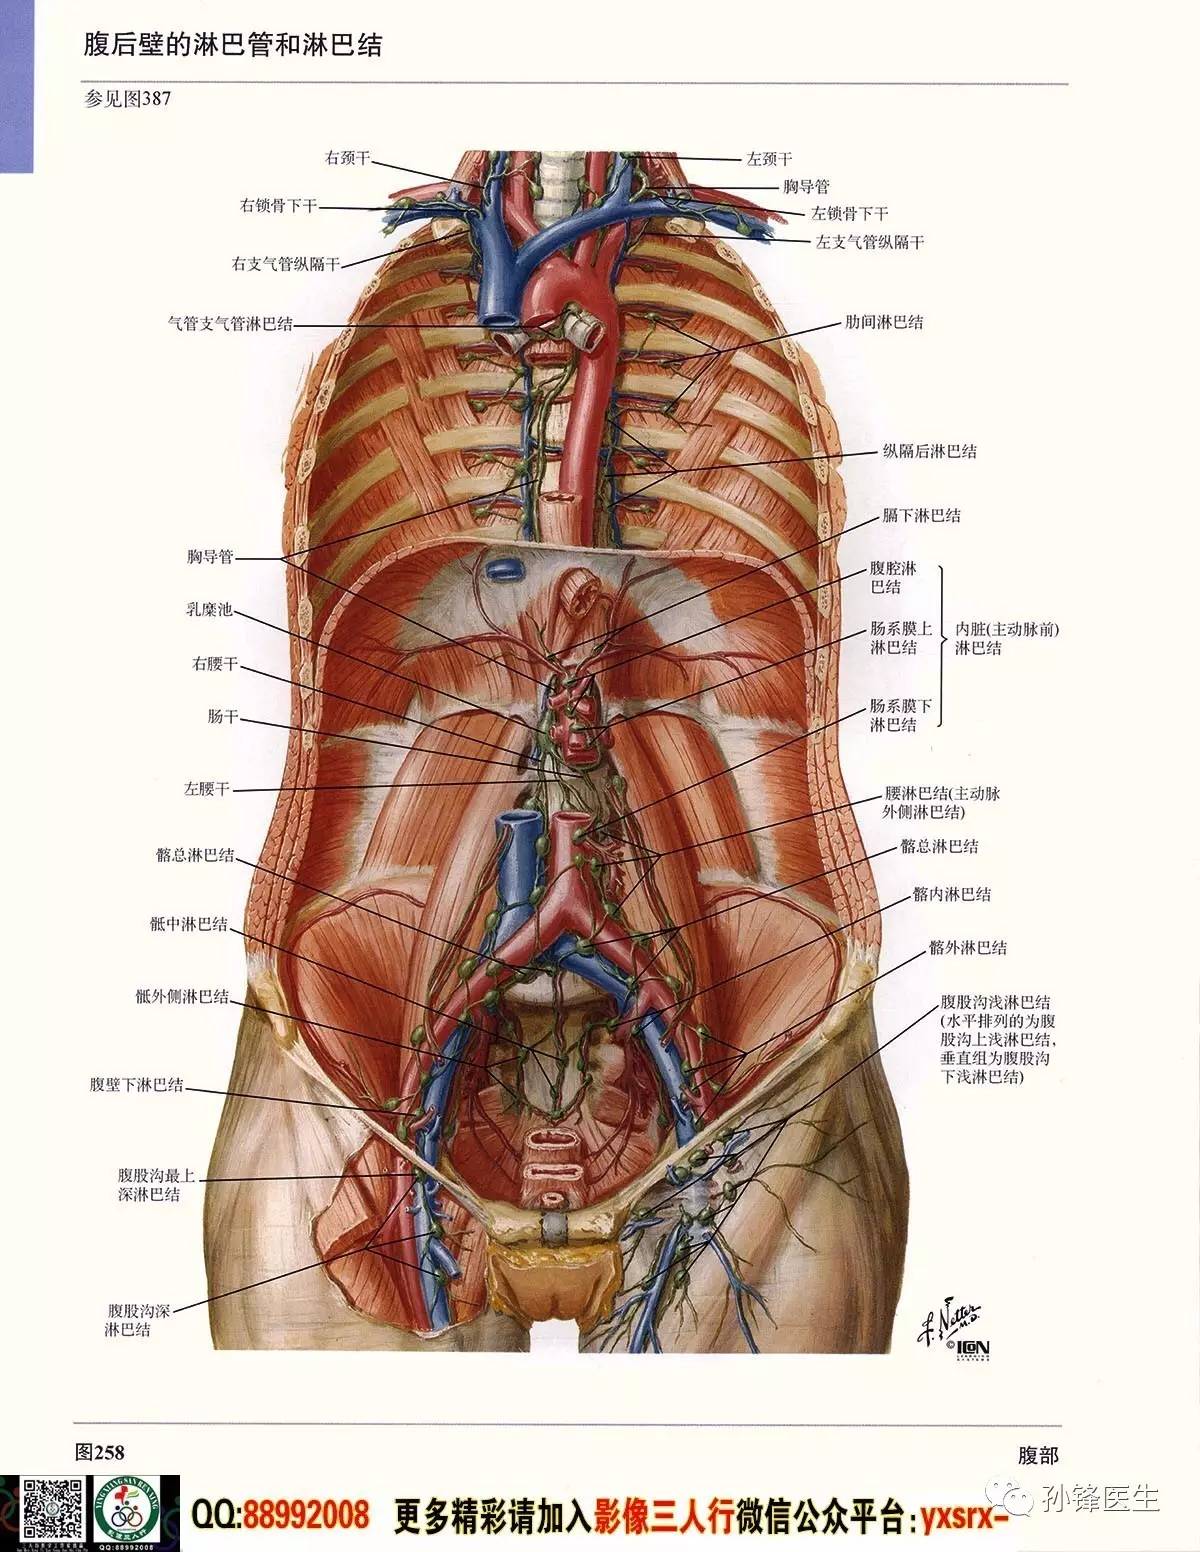 医学干货|超高清的《奈特人体解剖彩色图谱 腹部》(上)